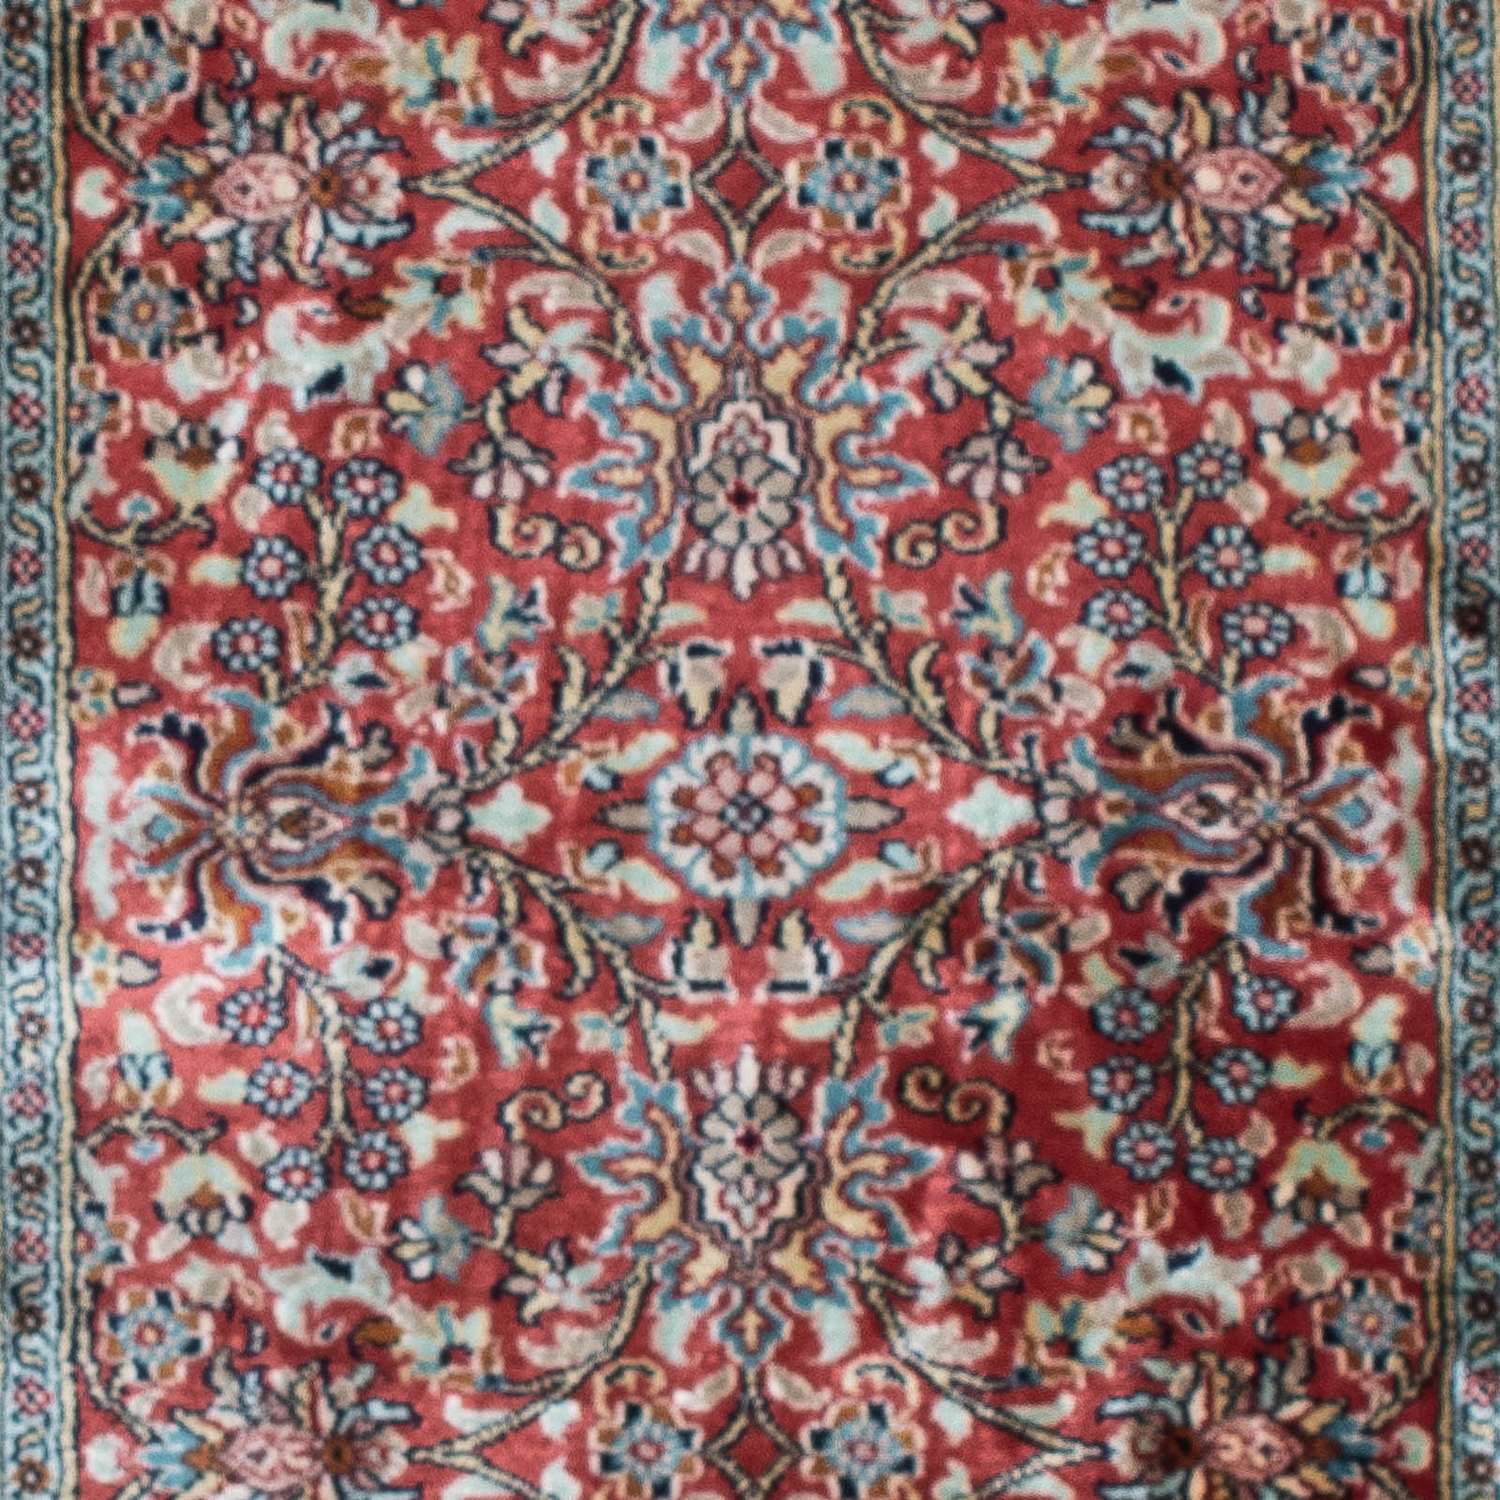 Biegacz Jedwabny dywan - Kashmir Silk - 179 x 64 cm - ciemna czerwień